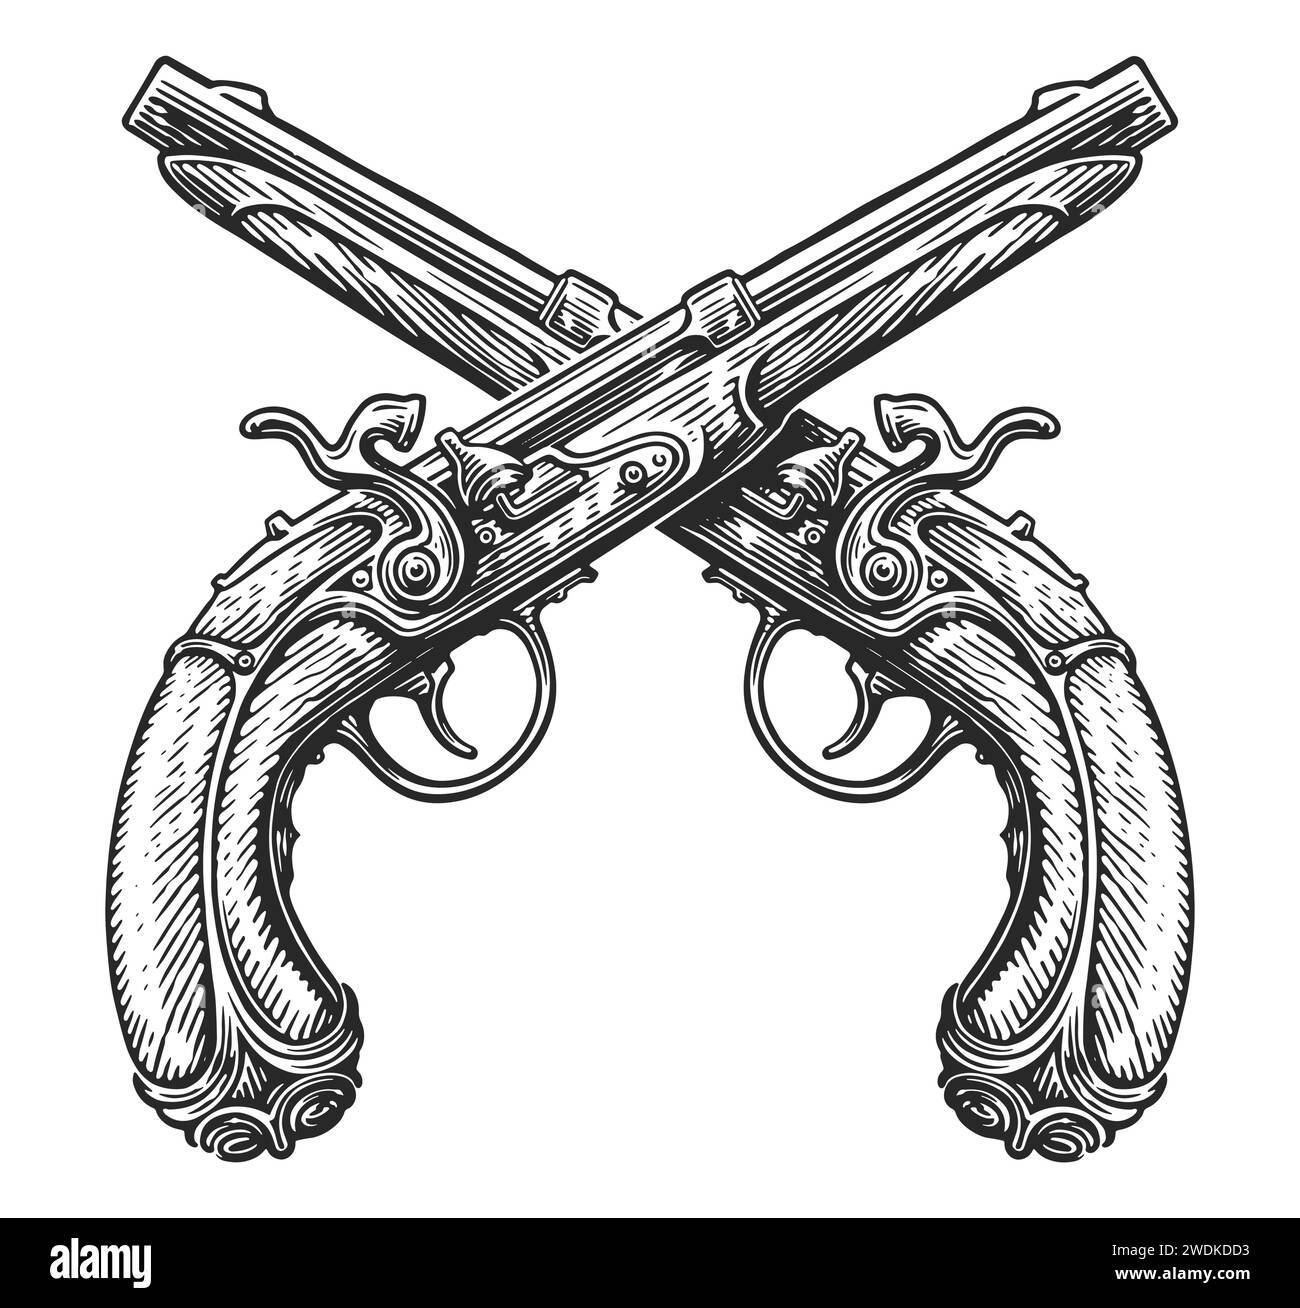 Pistole di blocco a pietra focaia incrociate, schizzo. Due pistole, armi da fuoco. Illustrazione vettoriale vintage disegnata a mano Illustrazione Vettoriale